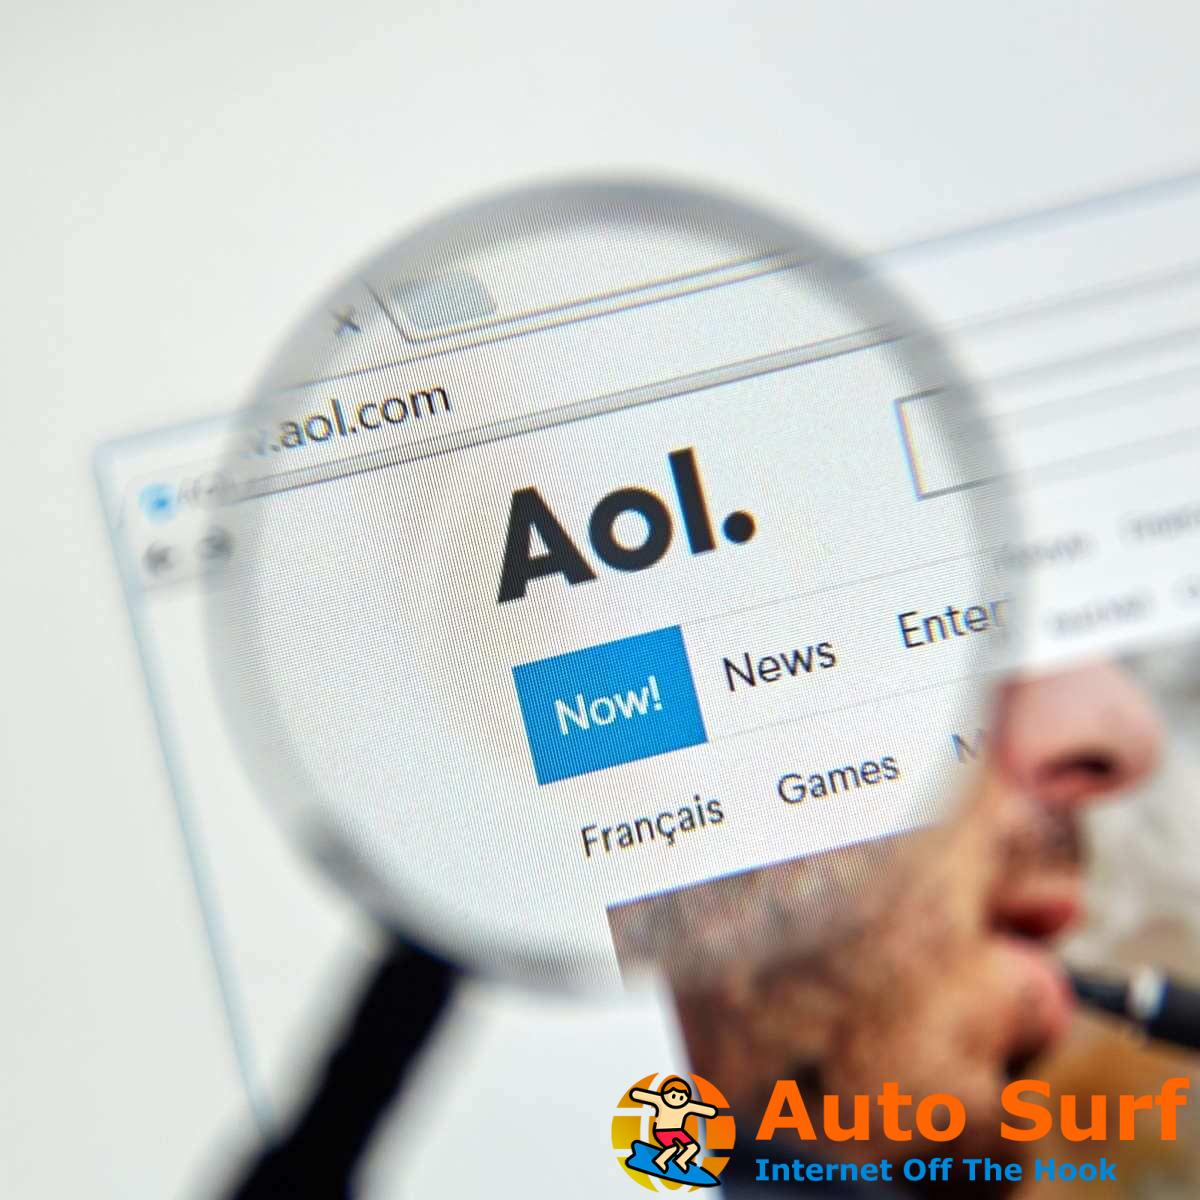 ¿AOL Calendar no envía recordatorios? Pruebe estas soluciones